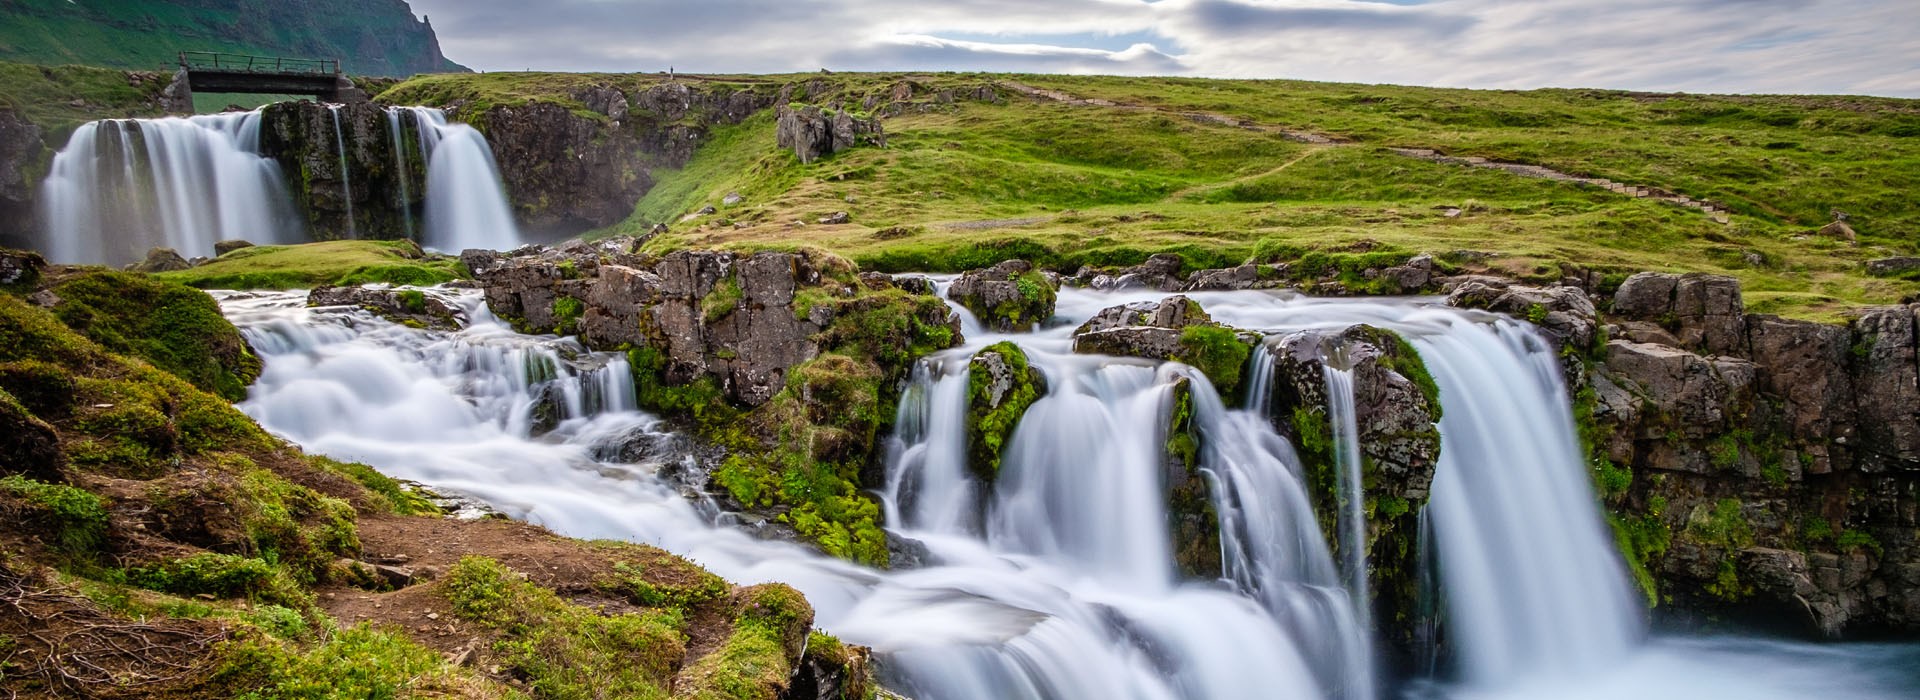 Visiter La Péninsule de Snæfellsness - Islande